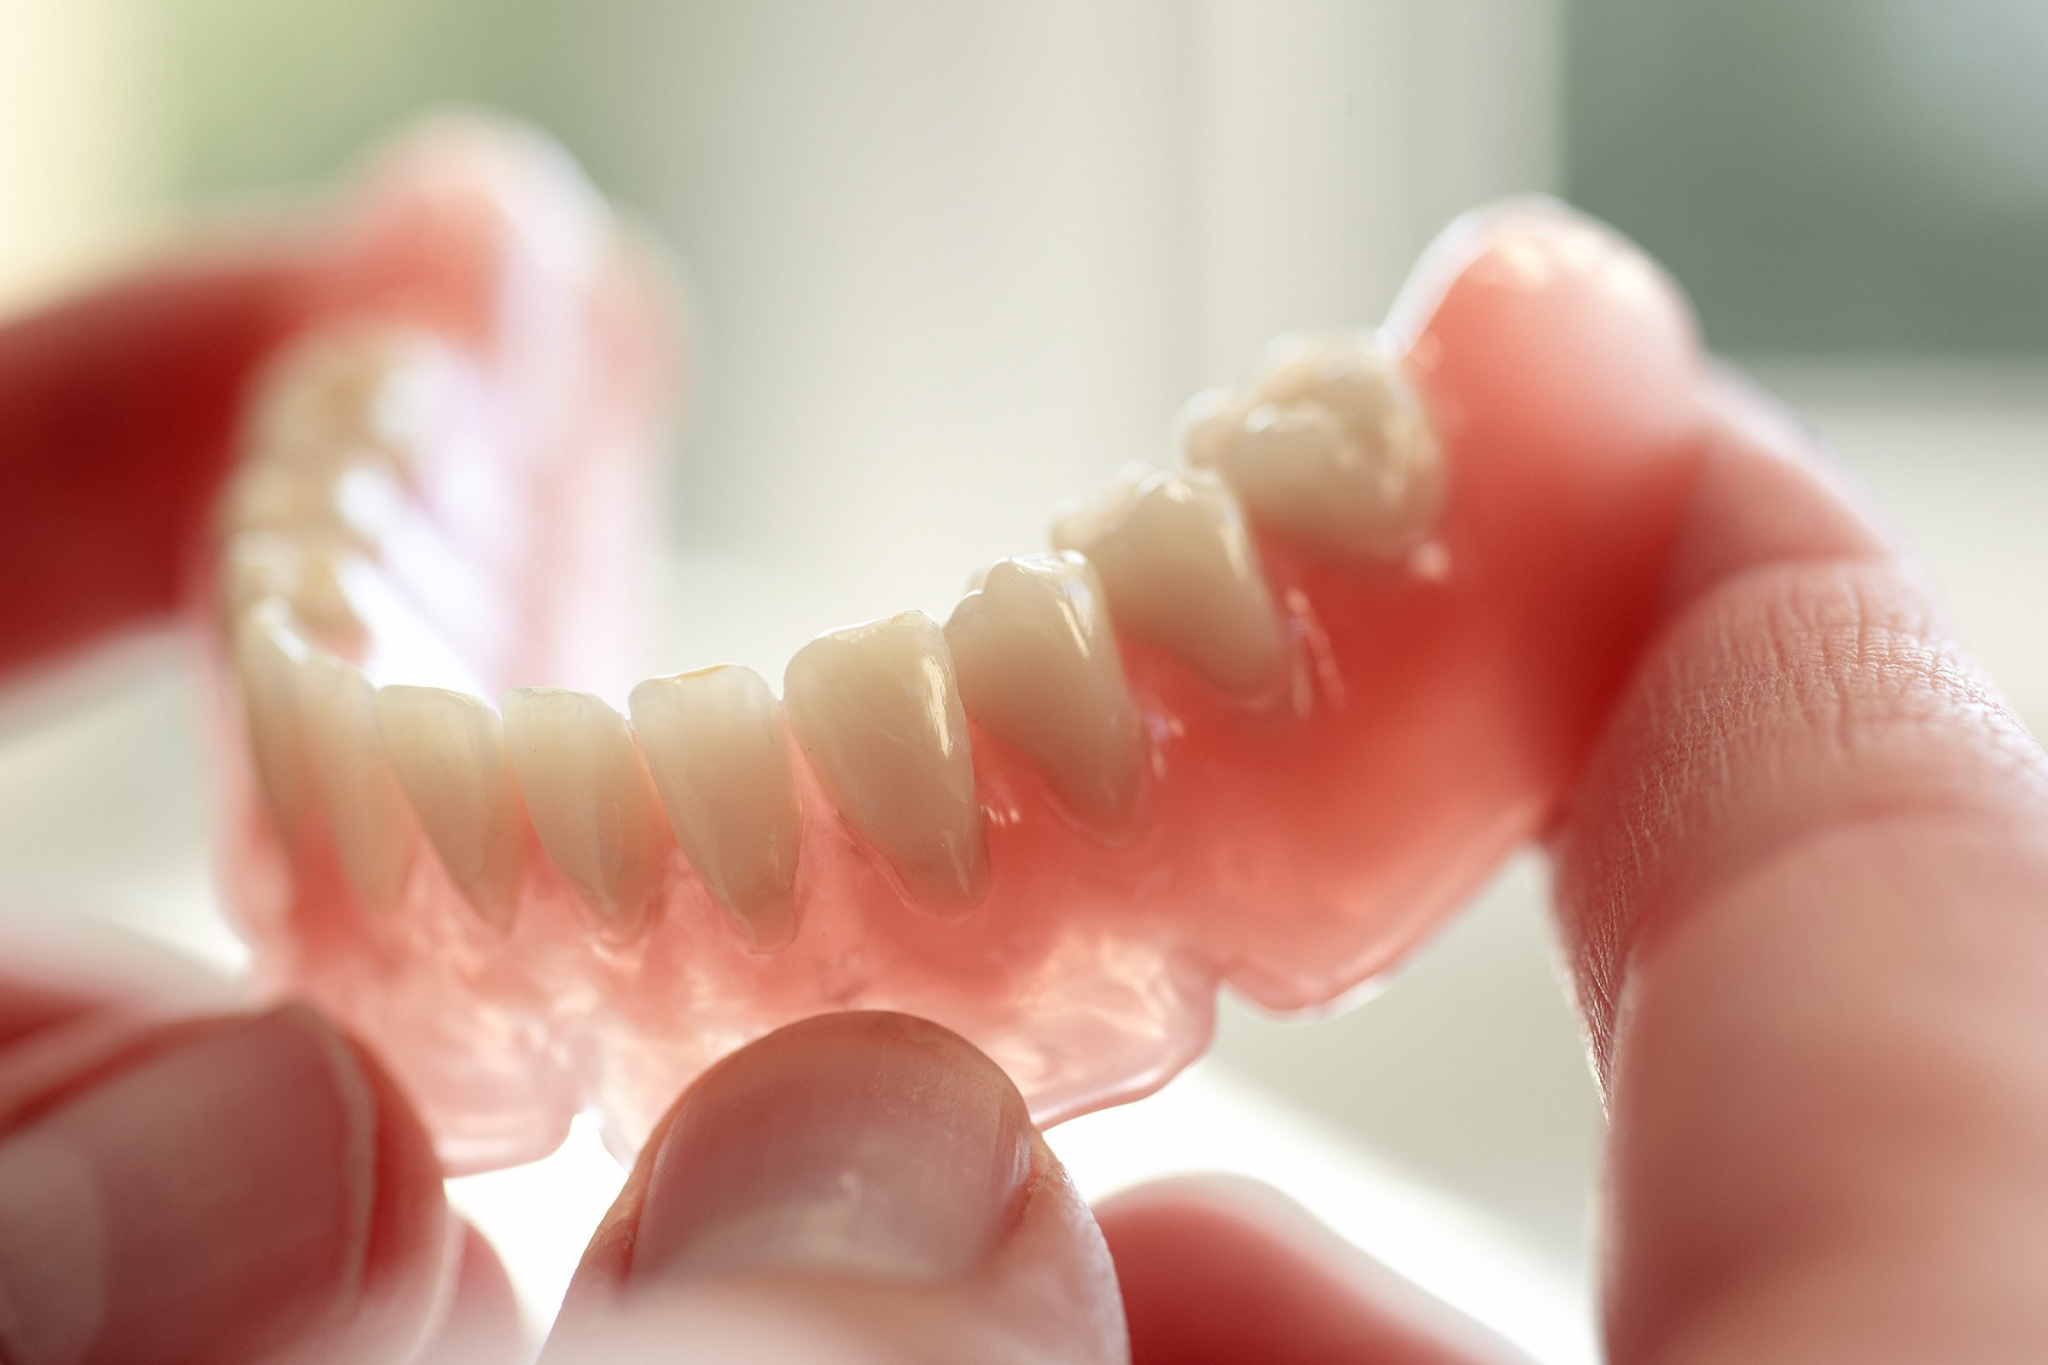 Сравниваем зубные протезы: какой вид выбрать?